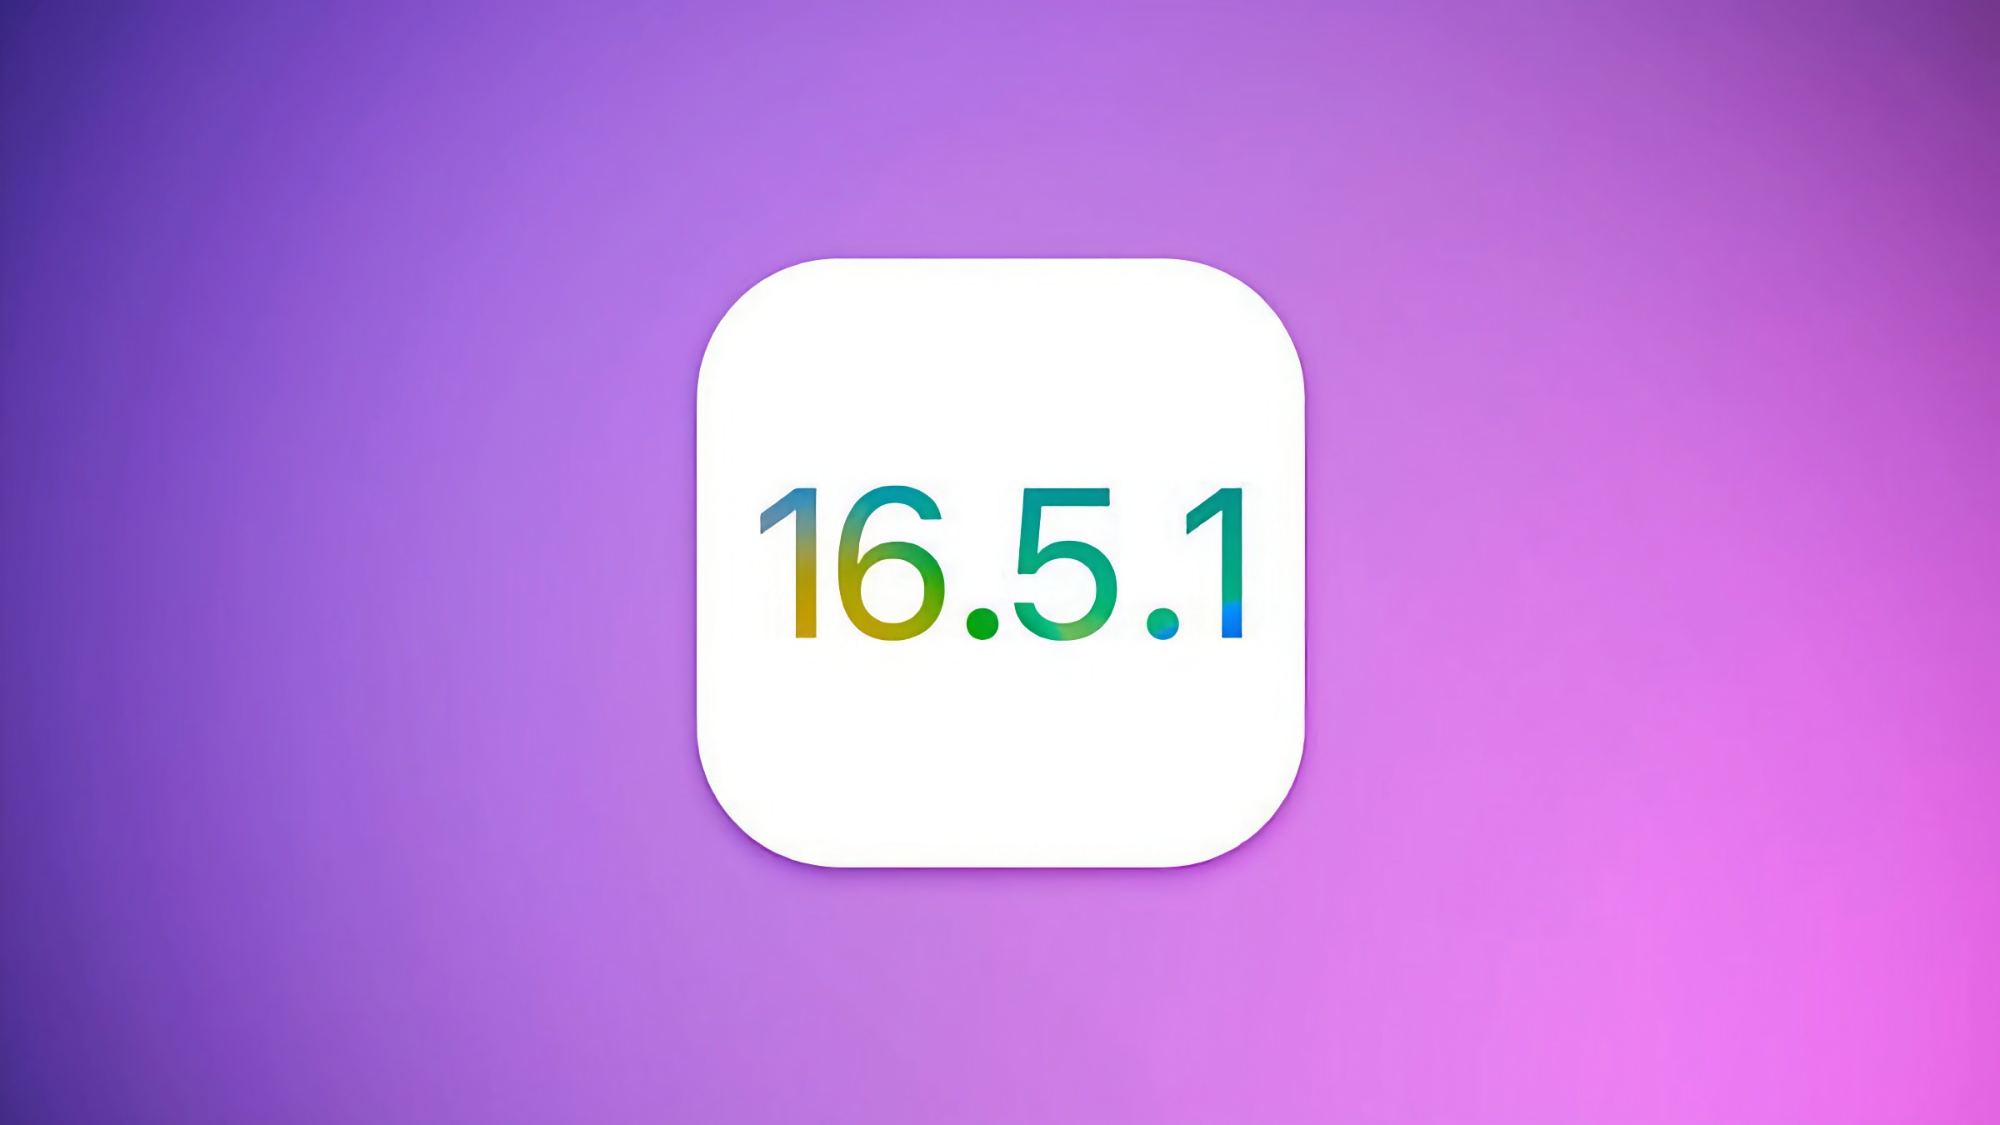 Apple bereitet iOS 16.5.1 Update für iPhone vor